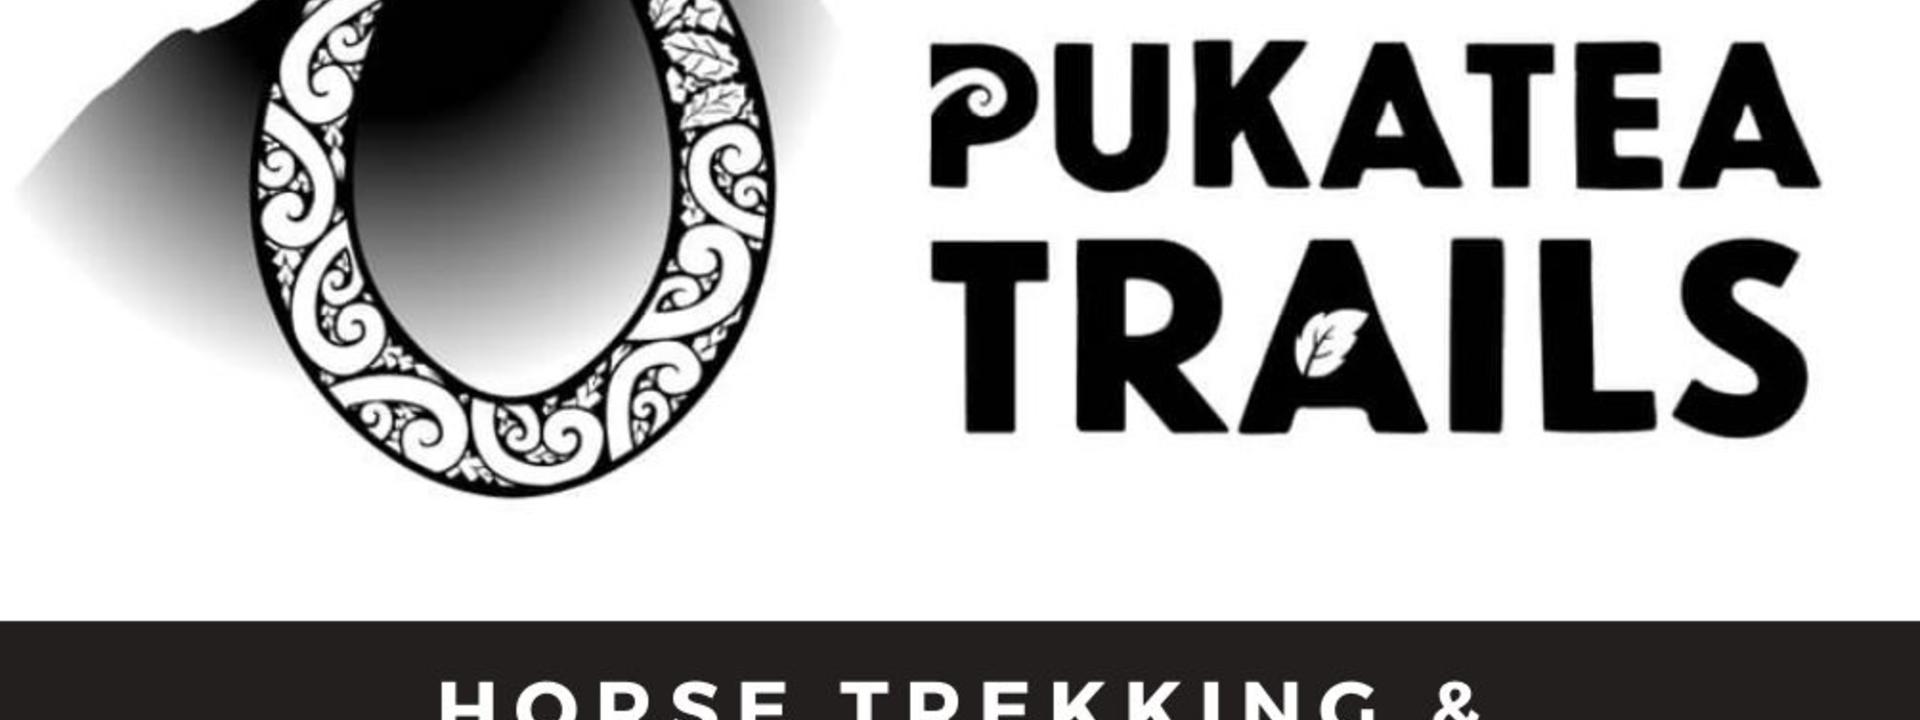 pukatea-horse-trekking-adventures-business-logo.jpg